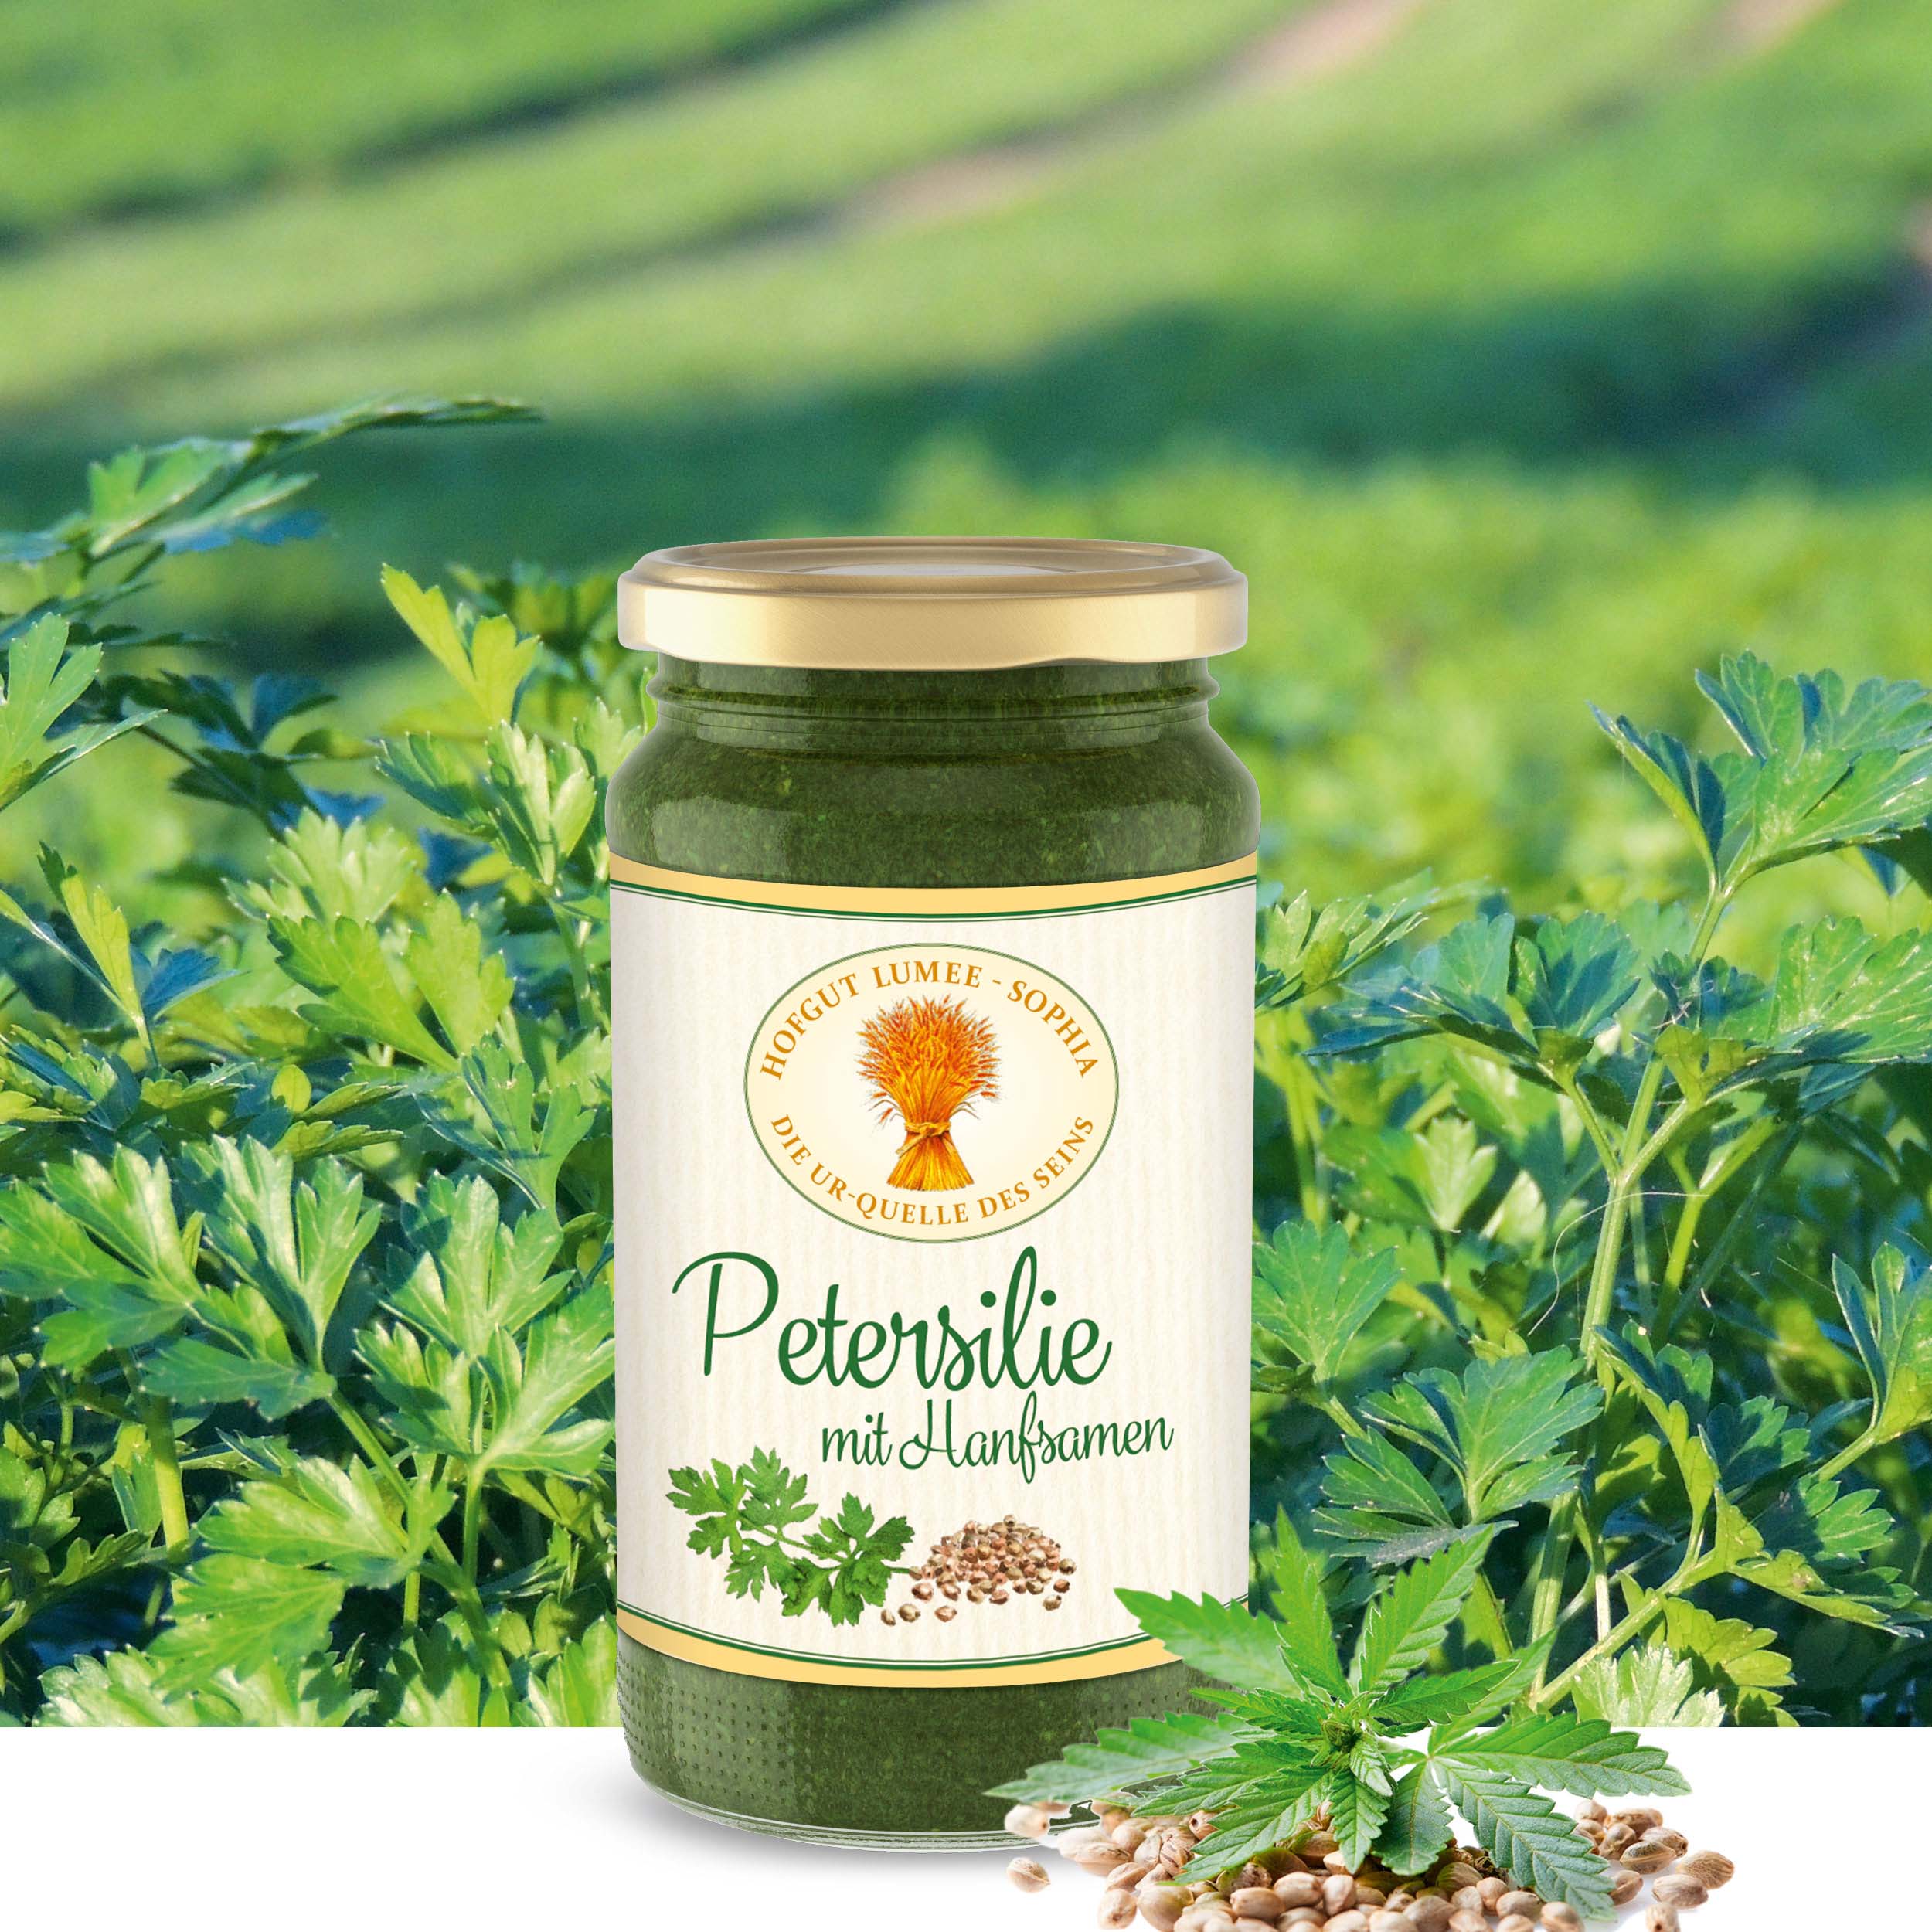 Veganes Petersilien-Pesto mit Hanf aus biologischem Anbau